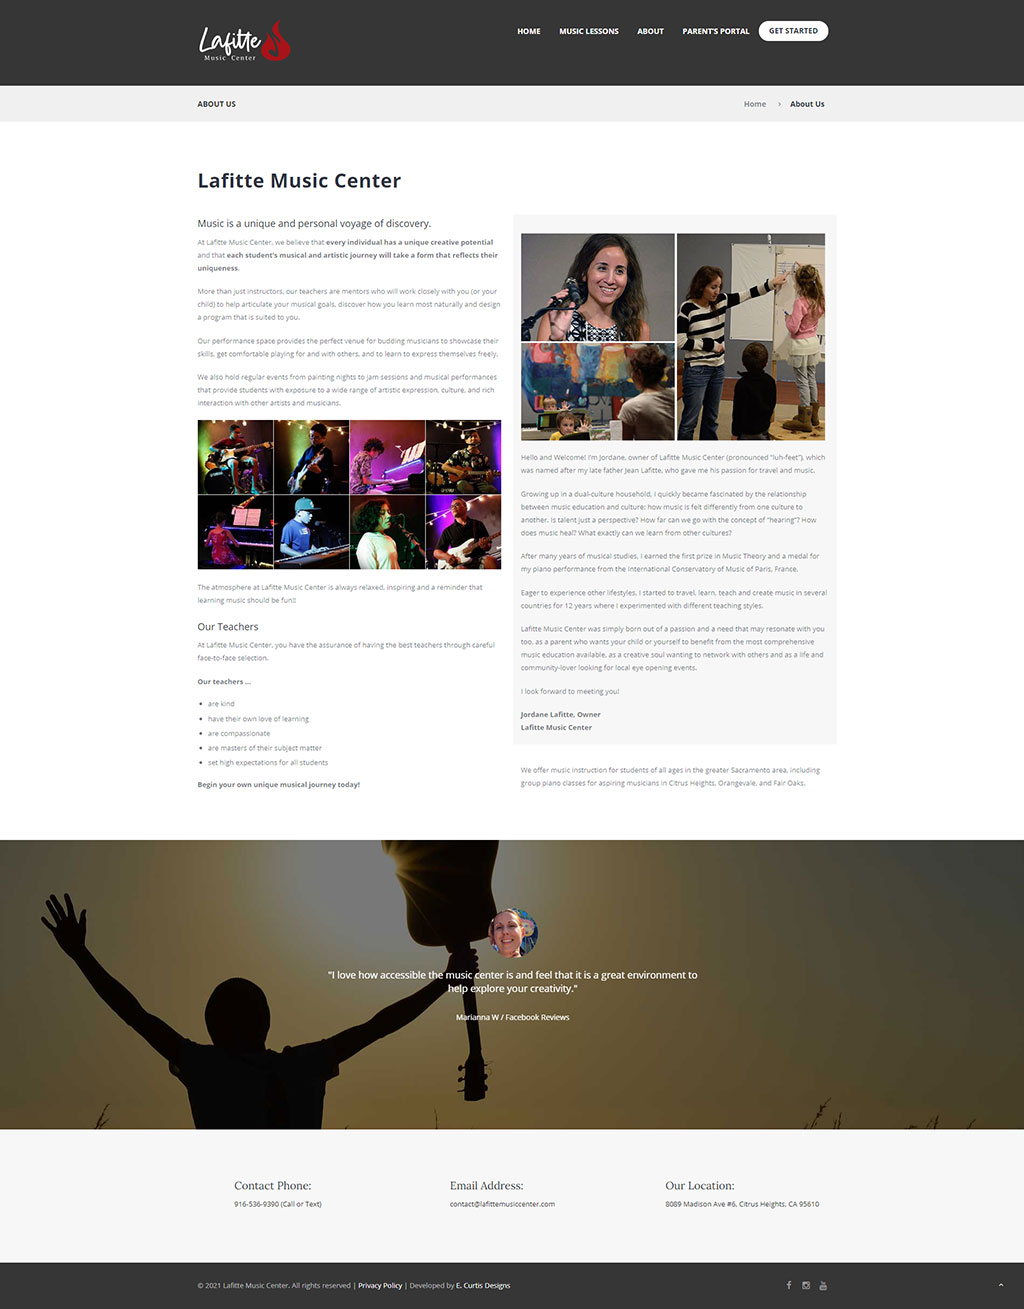 Website developed for Lafitte Music Center